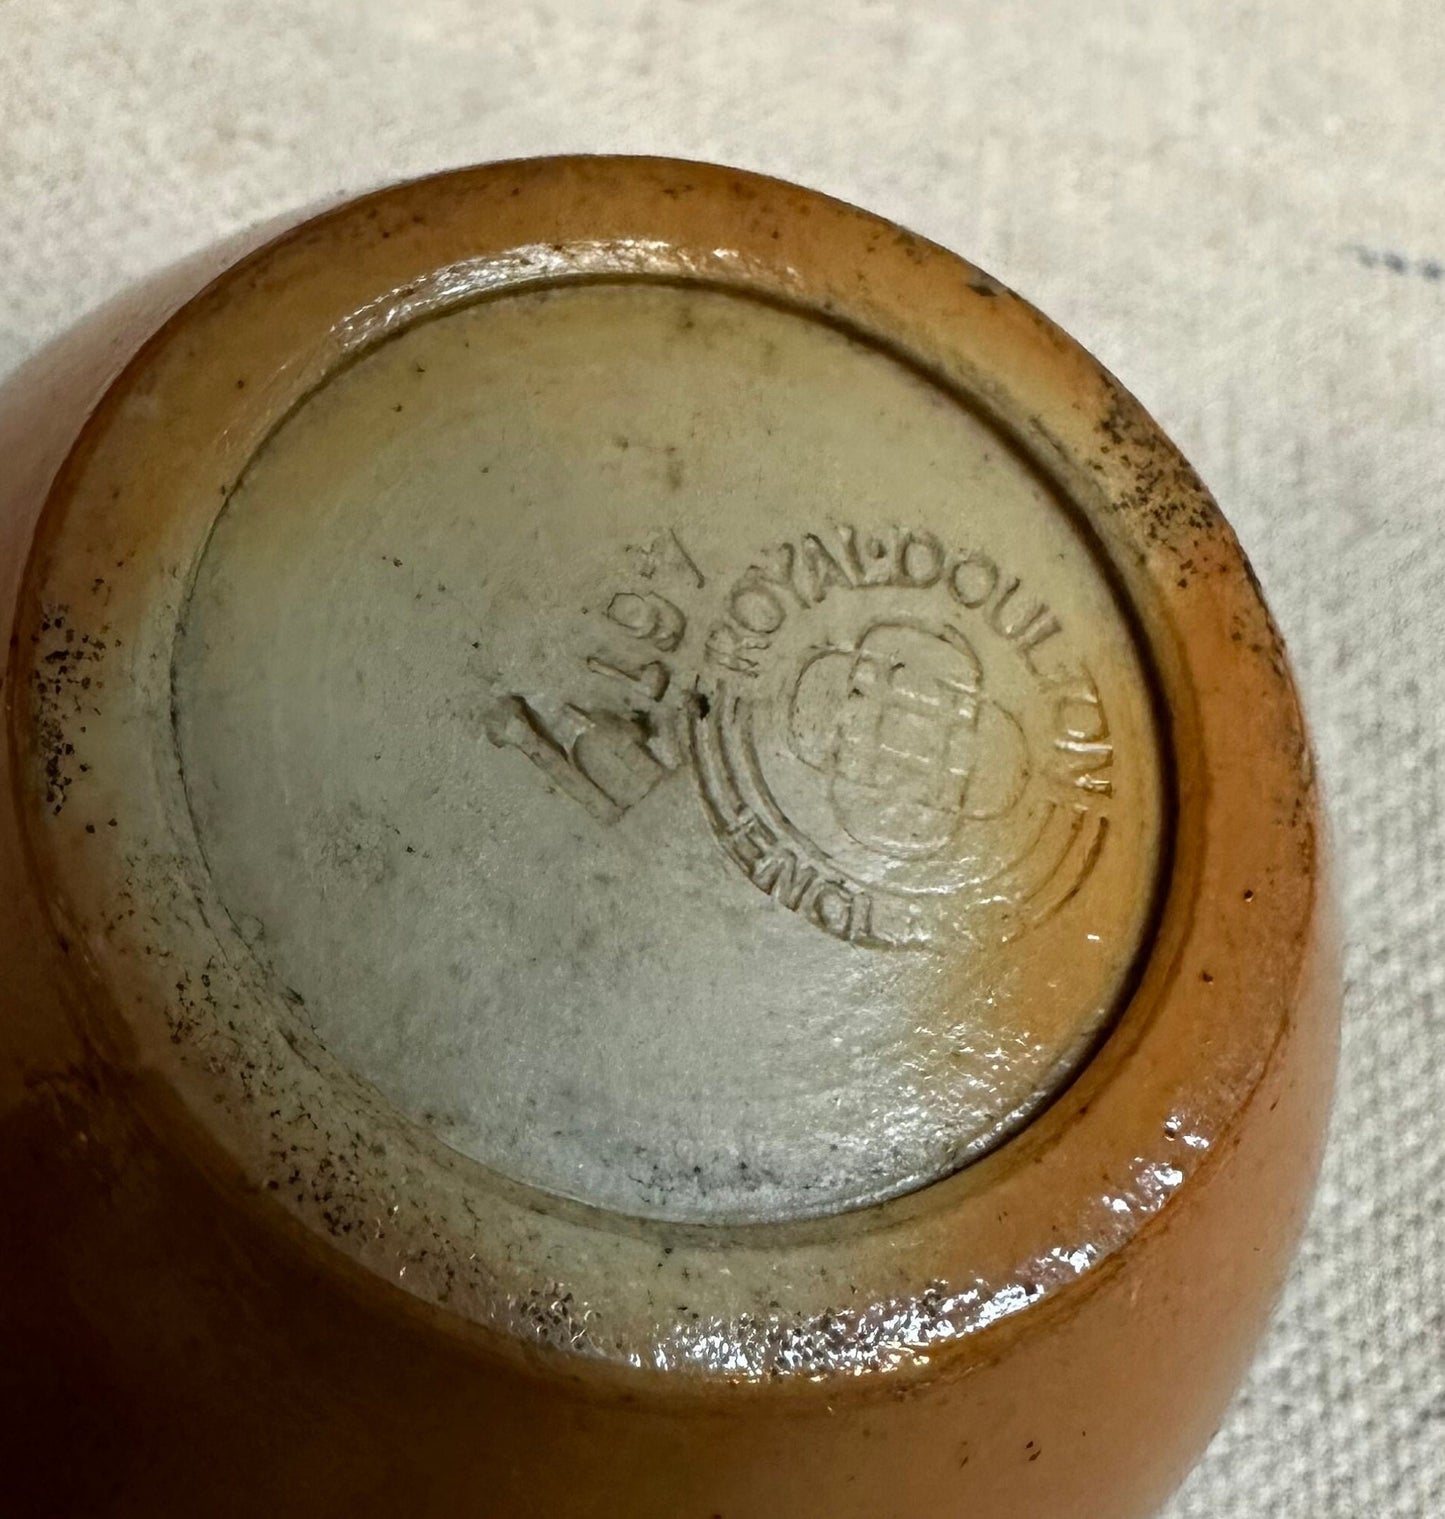 Zerosal Royal Doulton Salt Cellar Pot with Lid 1053